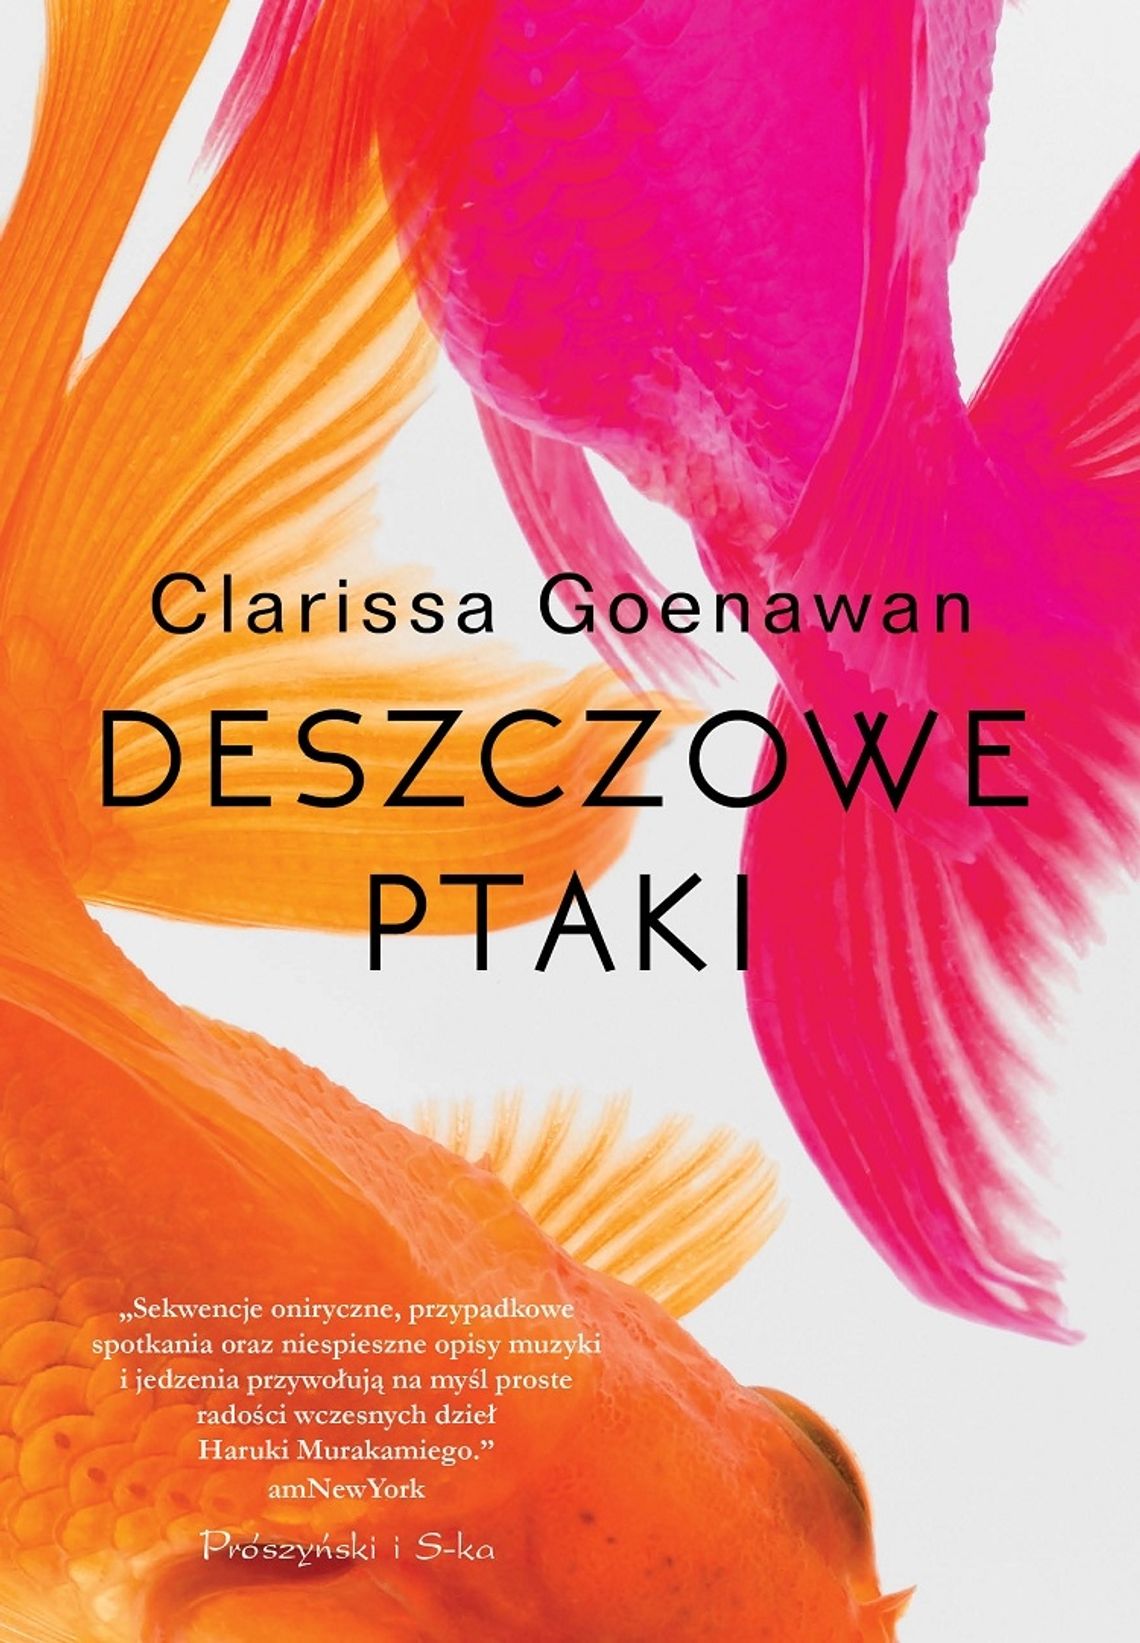 Clarissa Goenawan "Deszczowe ptaki"; wyd. Prószyński i S-ka